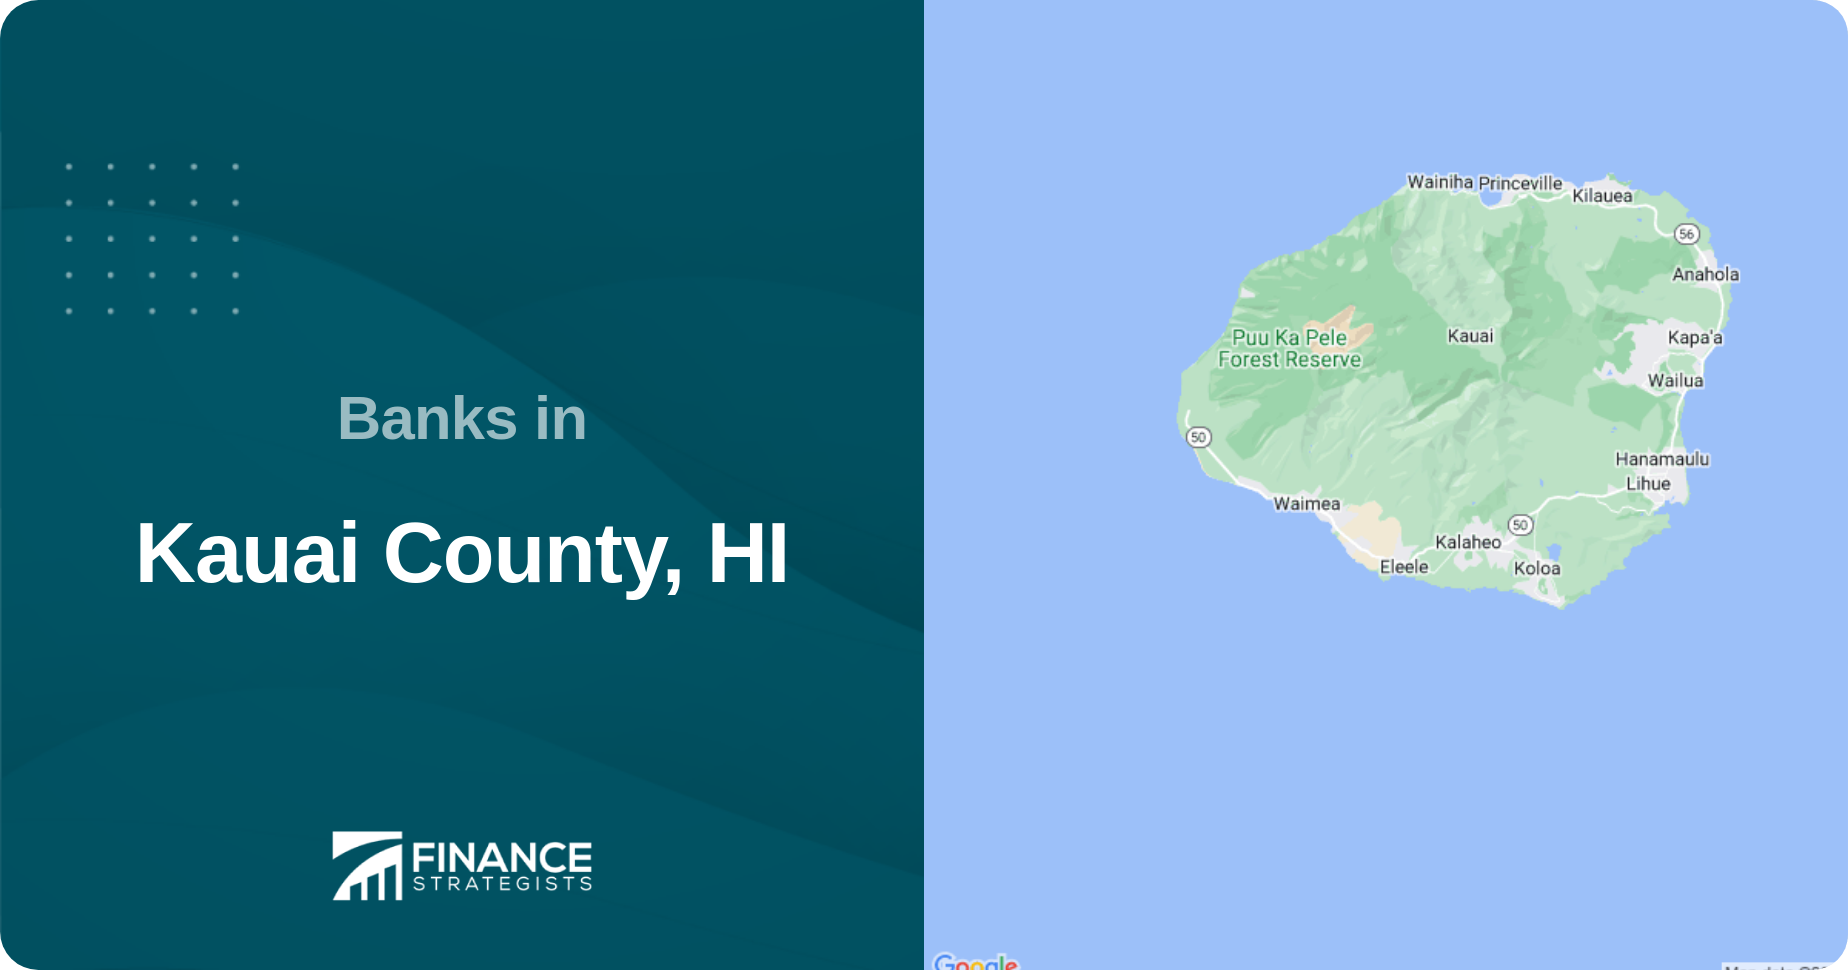 Banks in Kauai County, HI